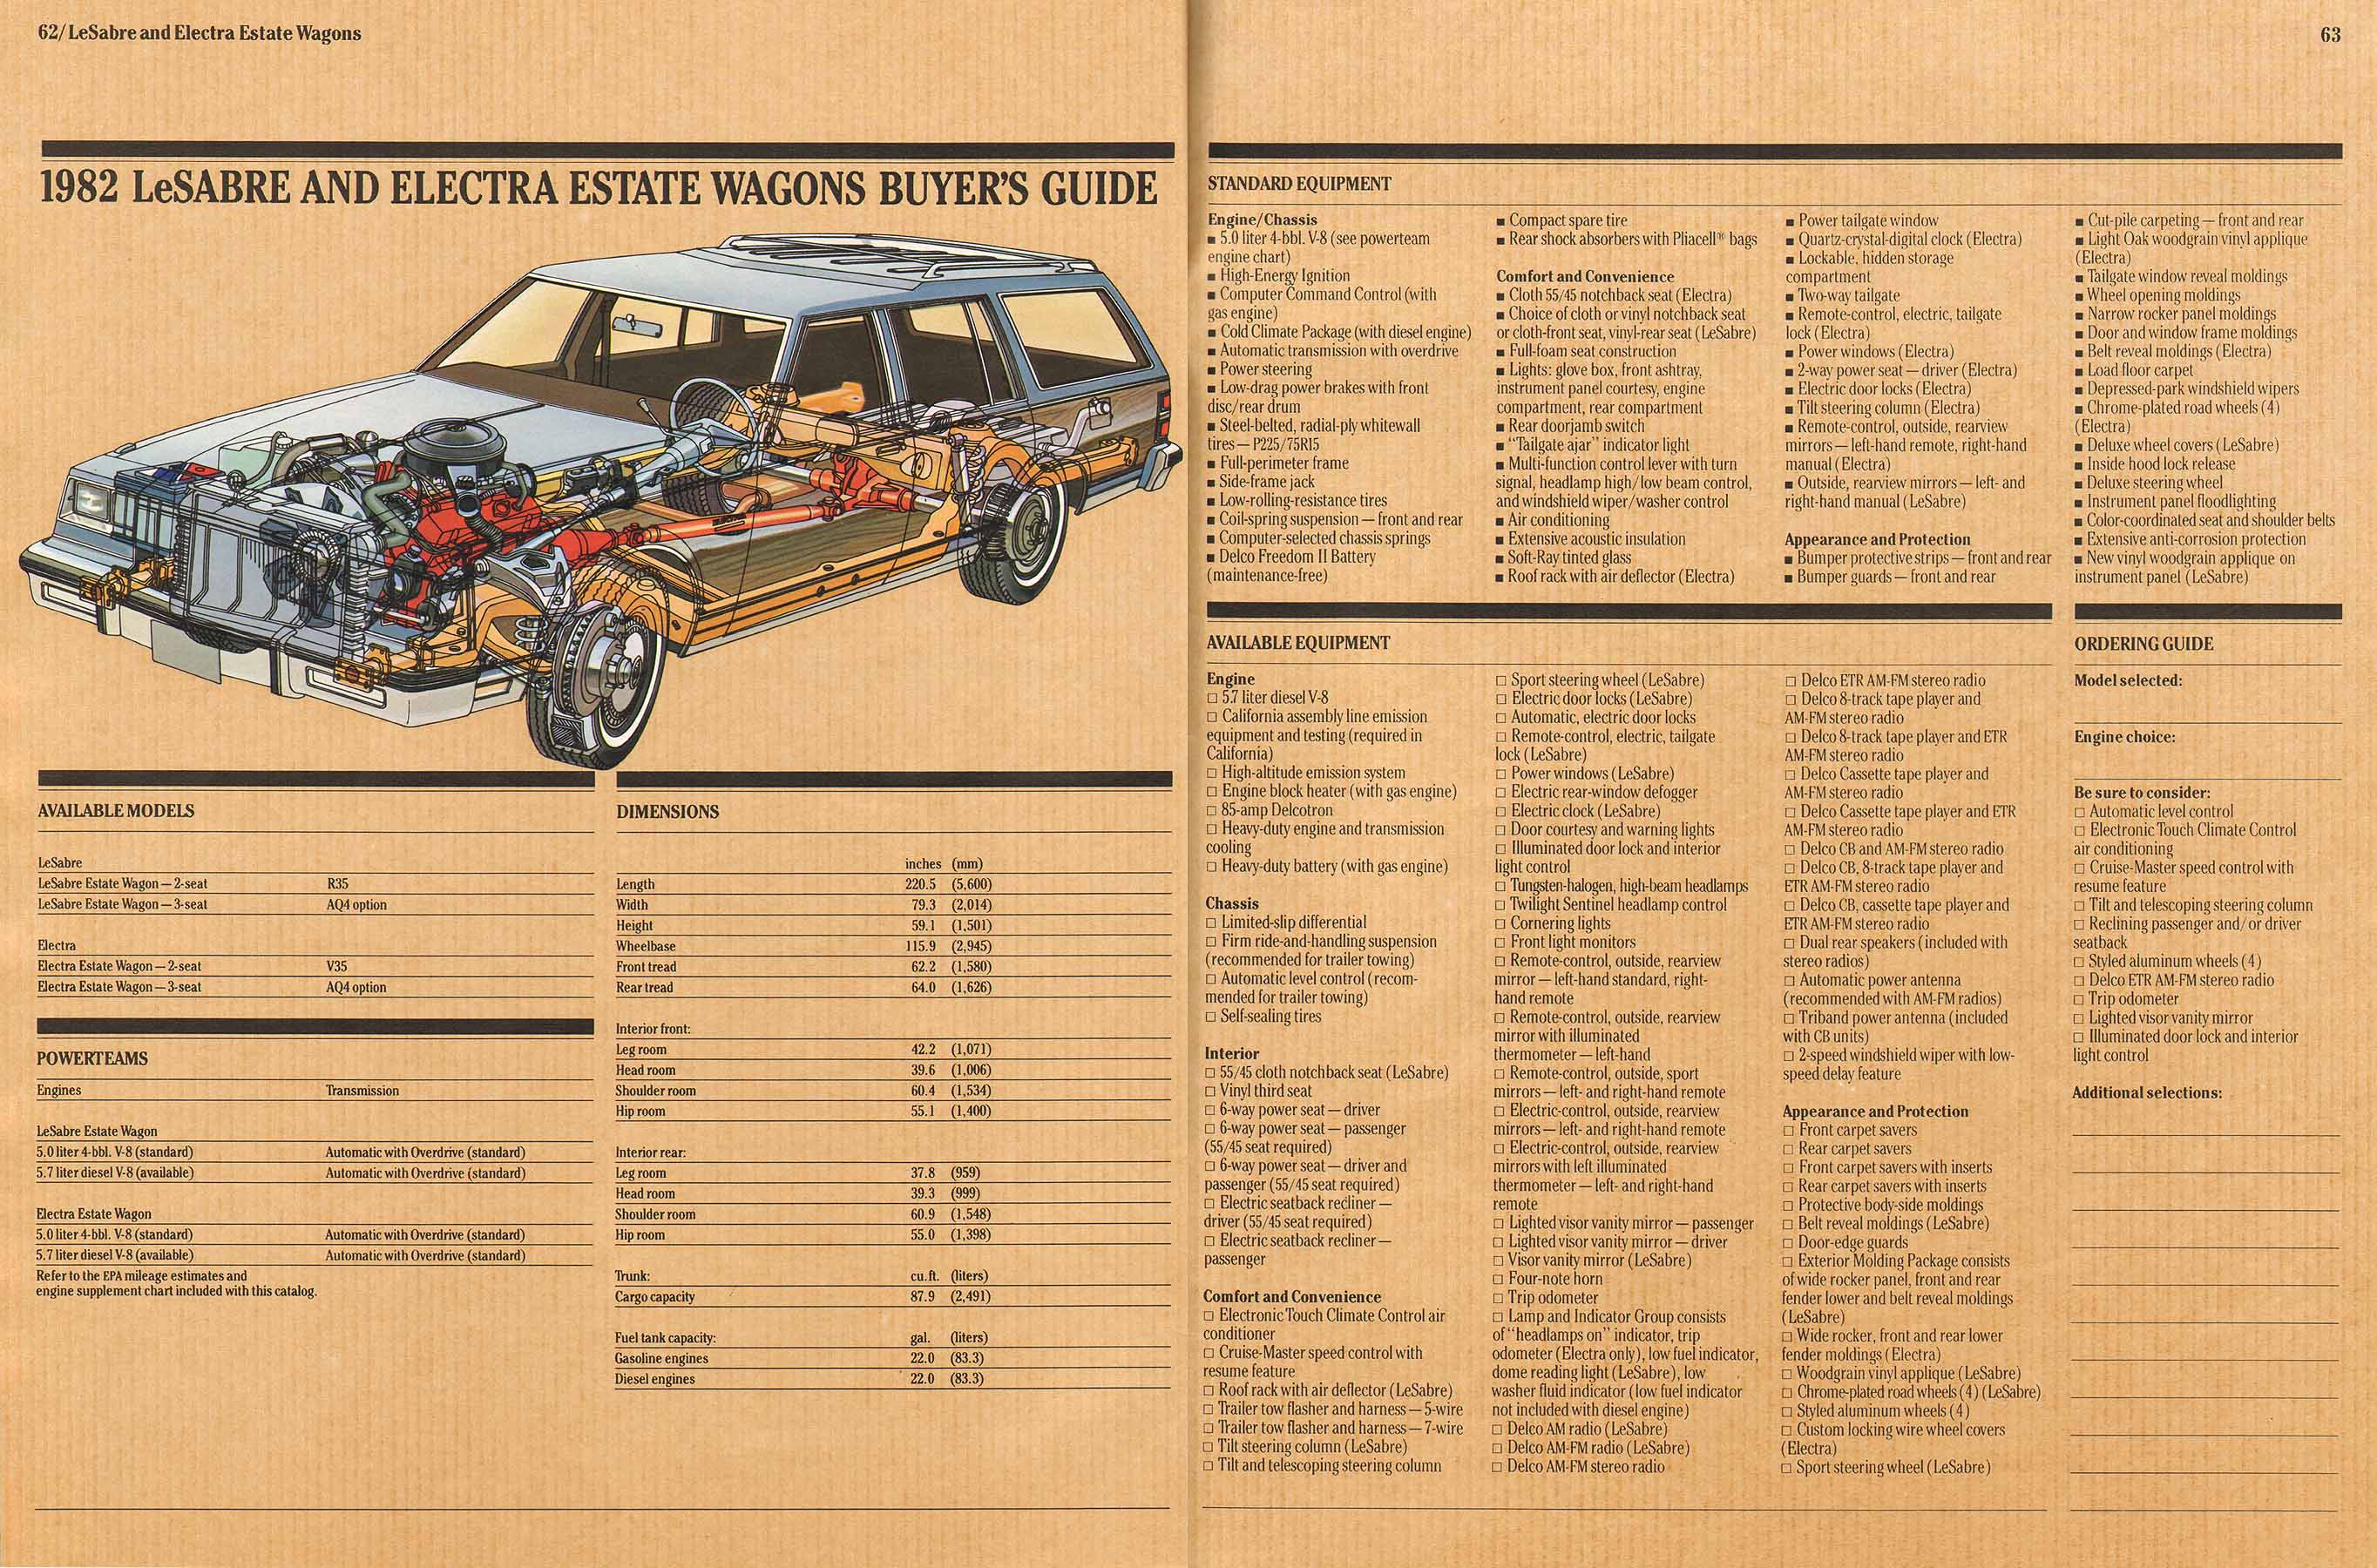 1982 Buick Full Line Prestige-62-63